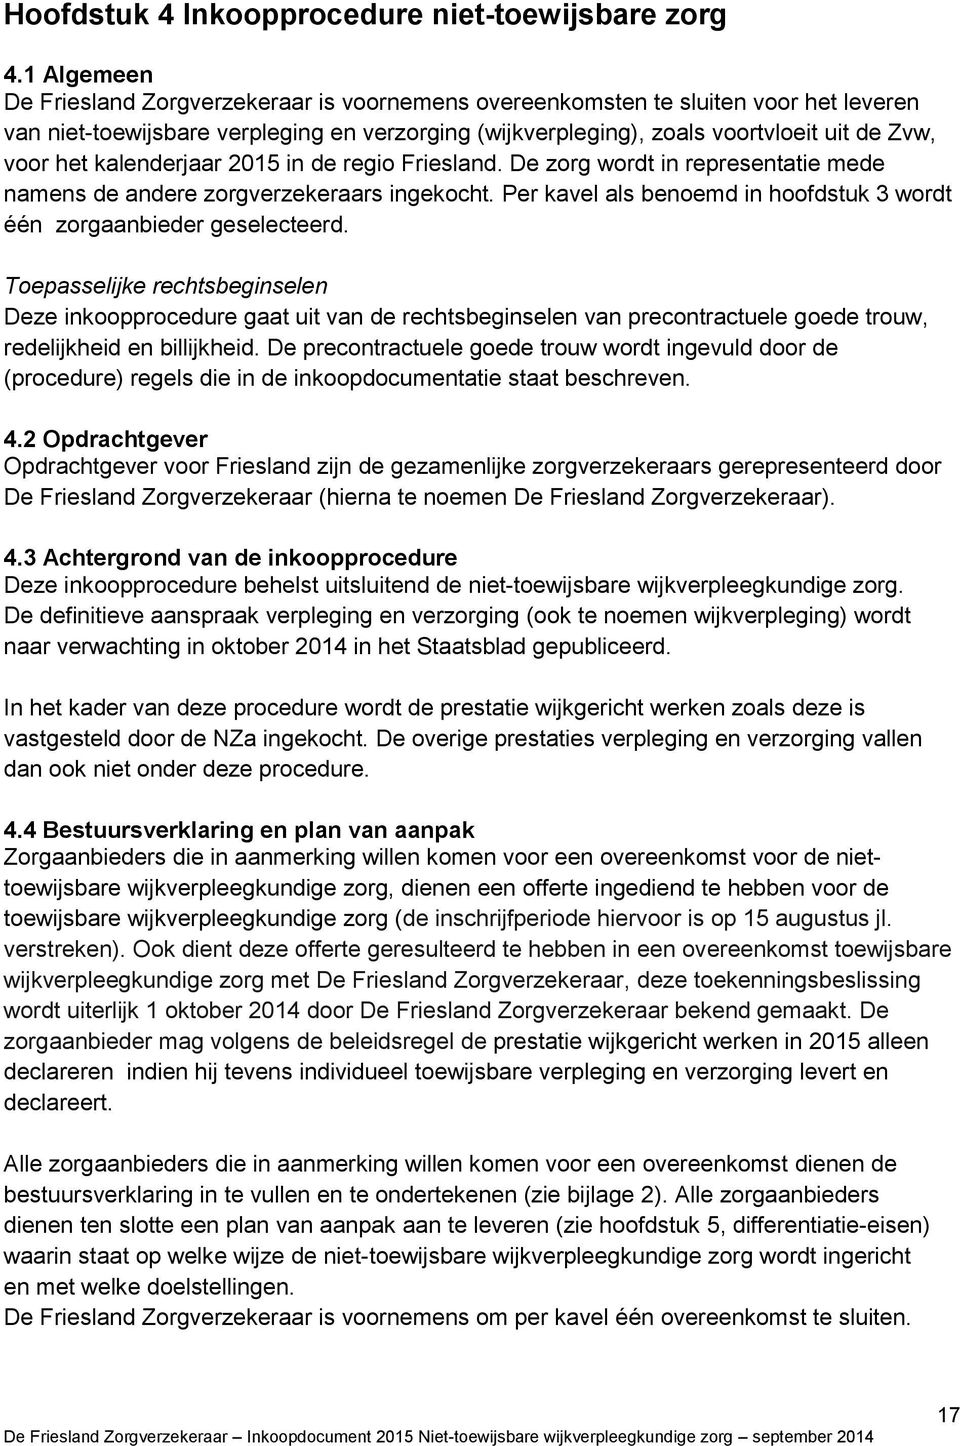 kalenderjaar 2015 in de regio Friesland. De zorg wordt in representatie mede namens de andere zorgverzekeraars ingekocht. Per kavel als benoemd in hoofdstuk 3 wordt één zorgaanbieder geselecteerd.